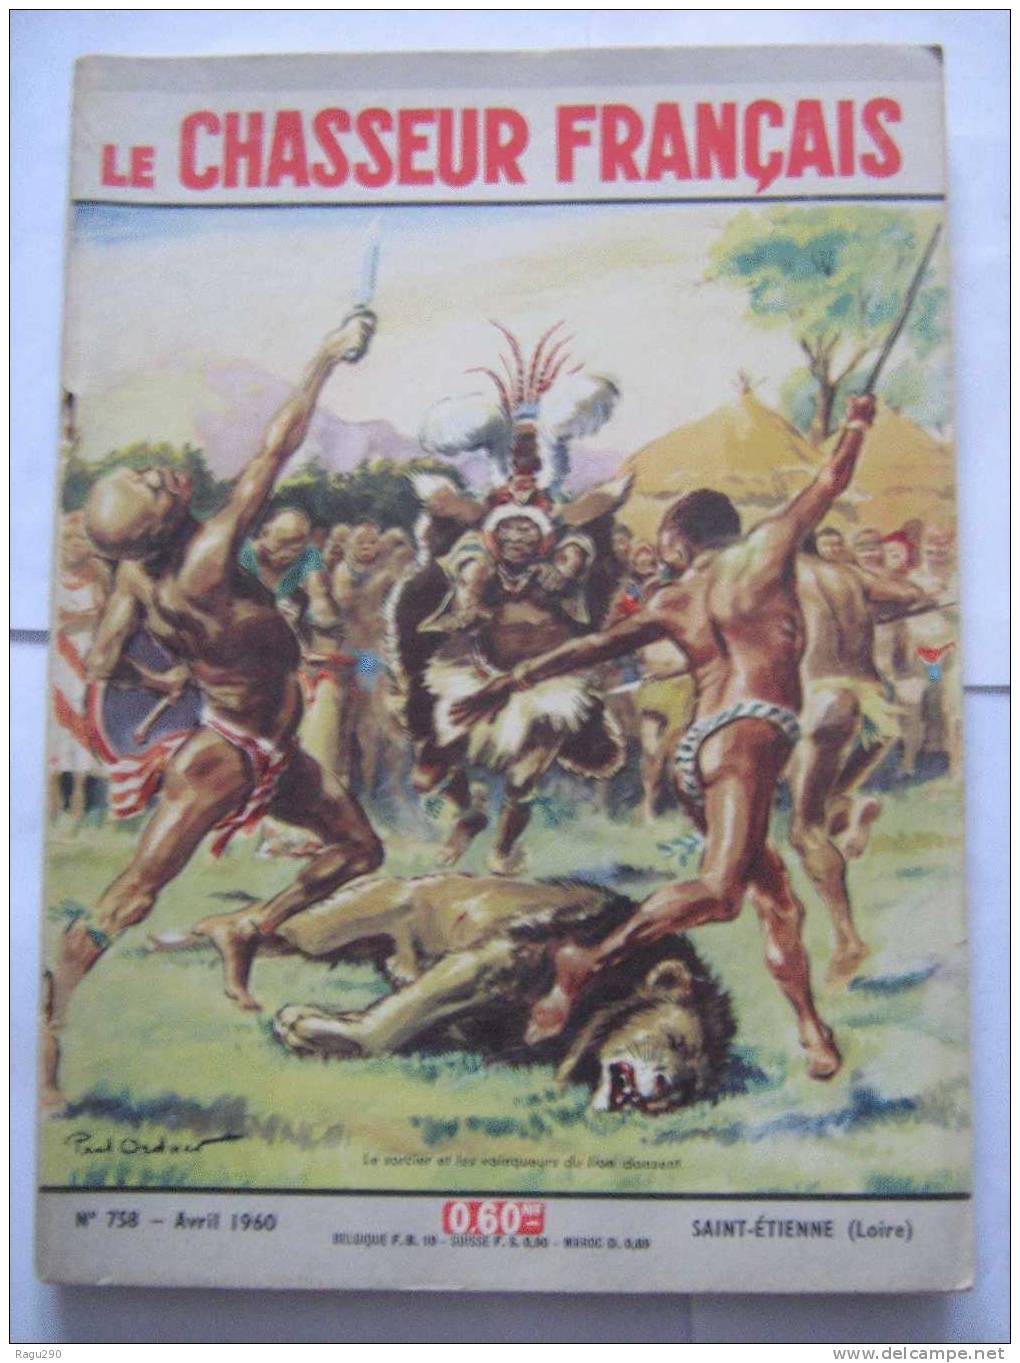 LE CHASSEUR FRANCAIS N° 758 Illustré Par  PAUL ORDNER -- Le Sorcier Et Les Vainqueurs Du Lion Dansent   -- Avril 1960 - Hunting & Fishing